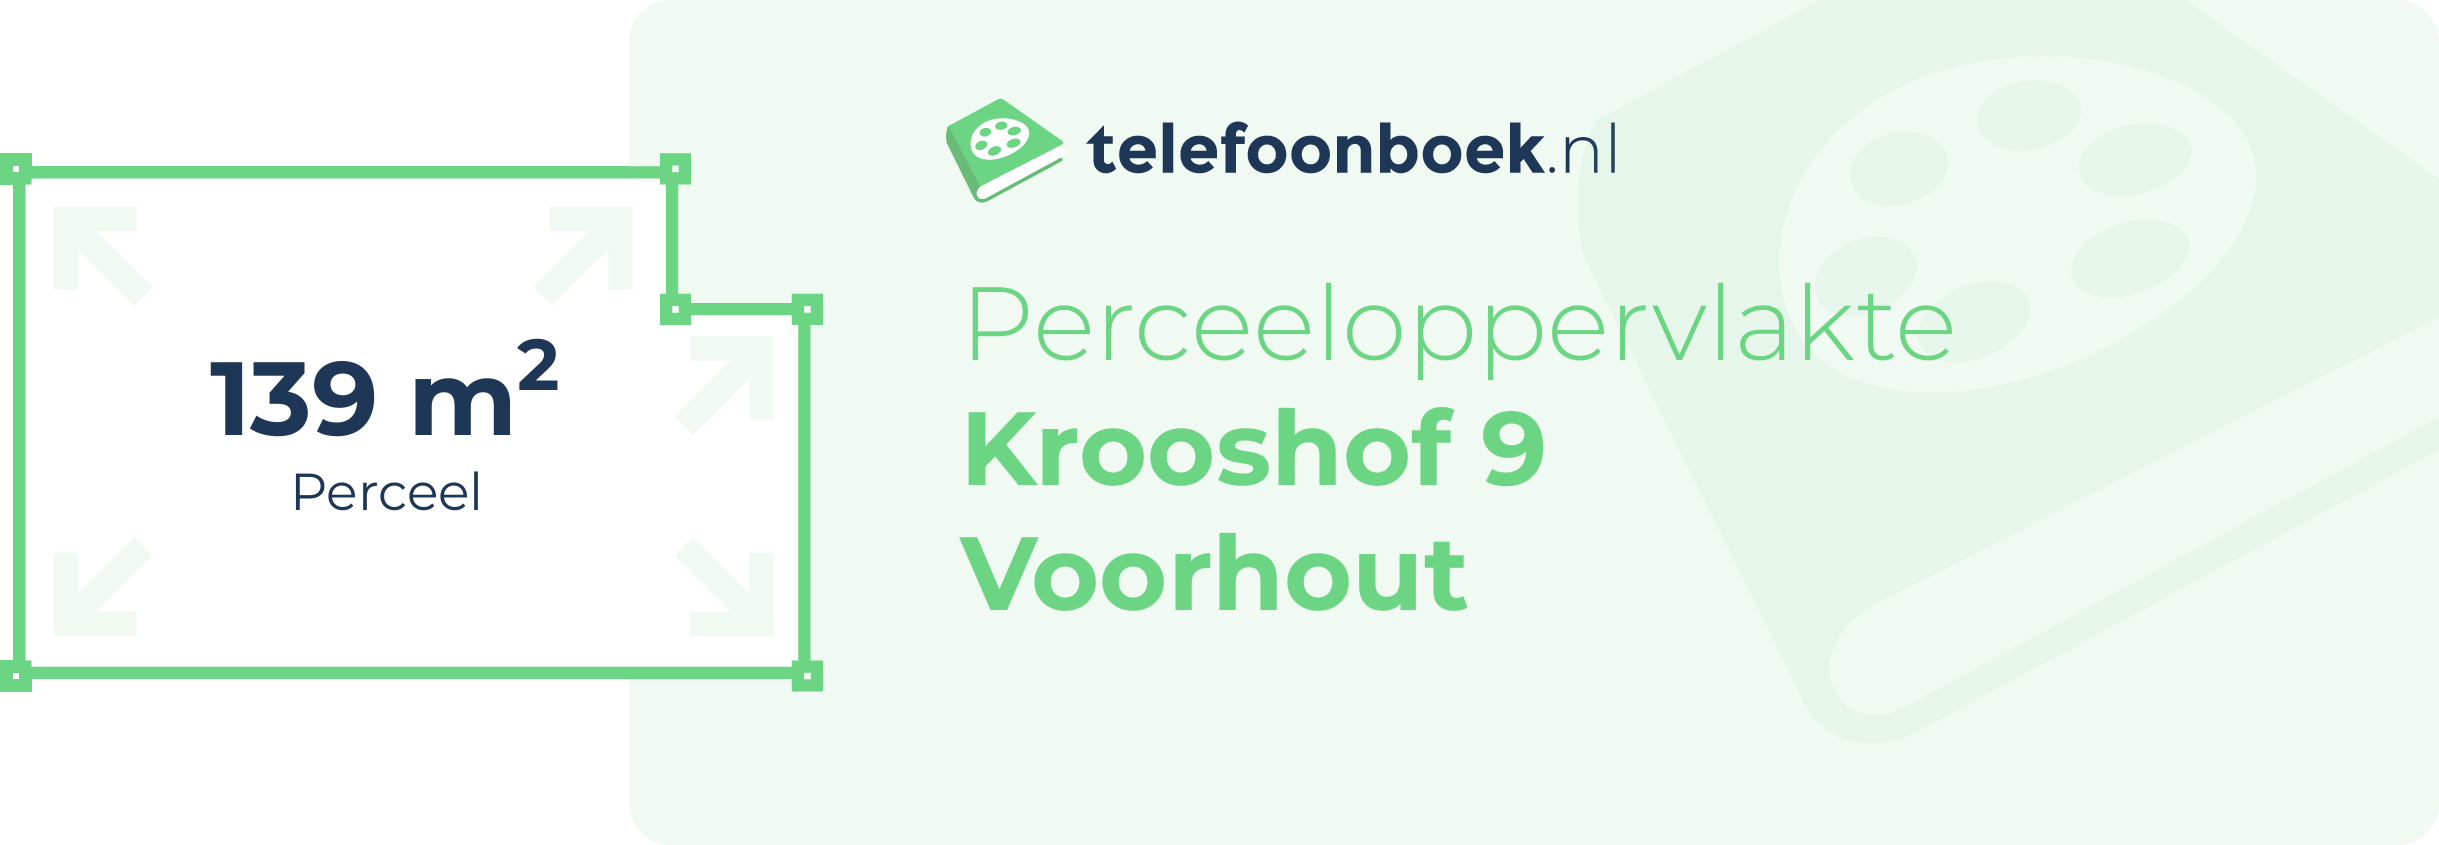 Perceeloppervlakte Krooshof 9 Voorhout